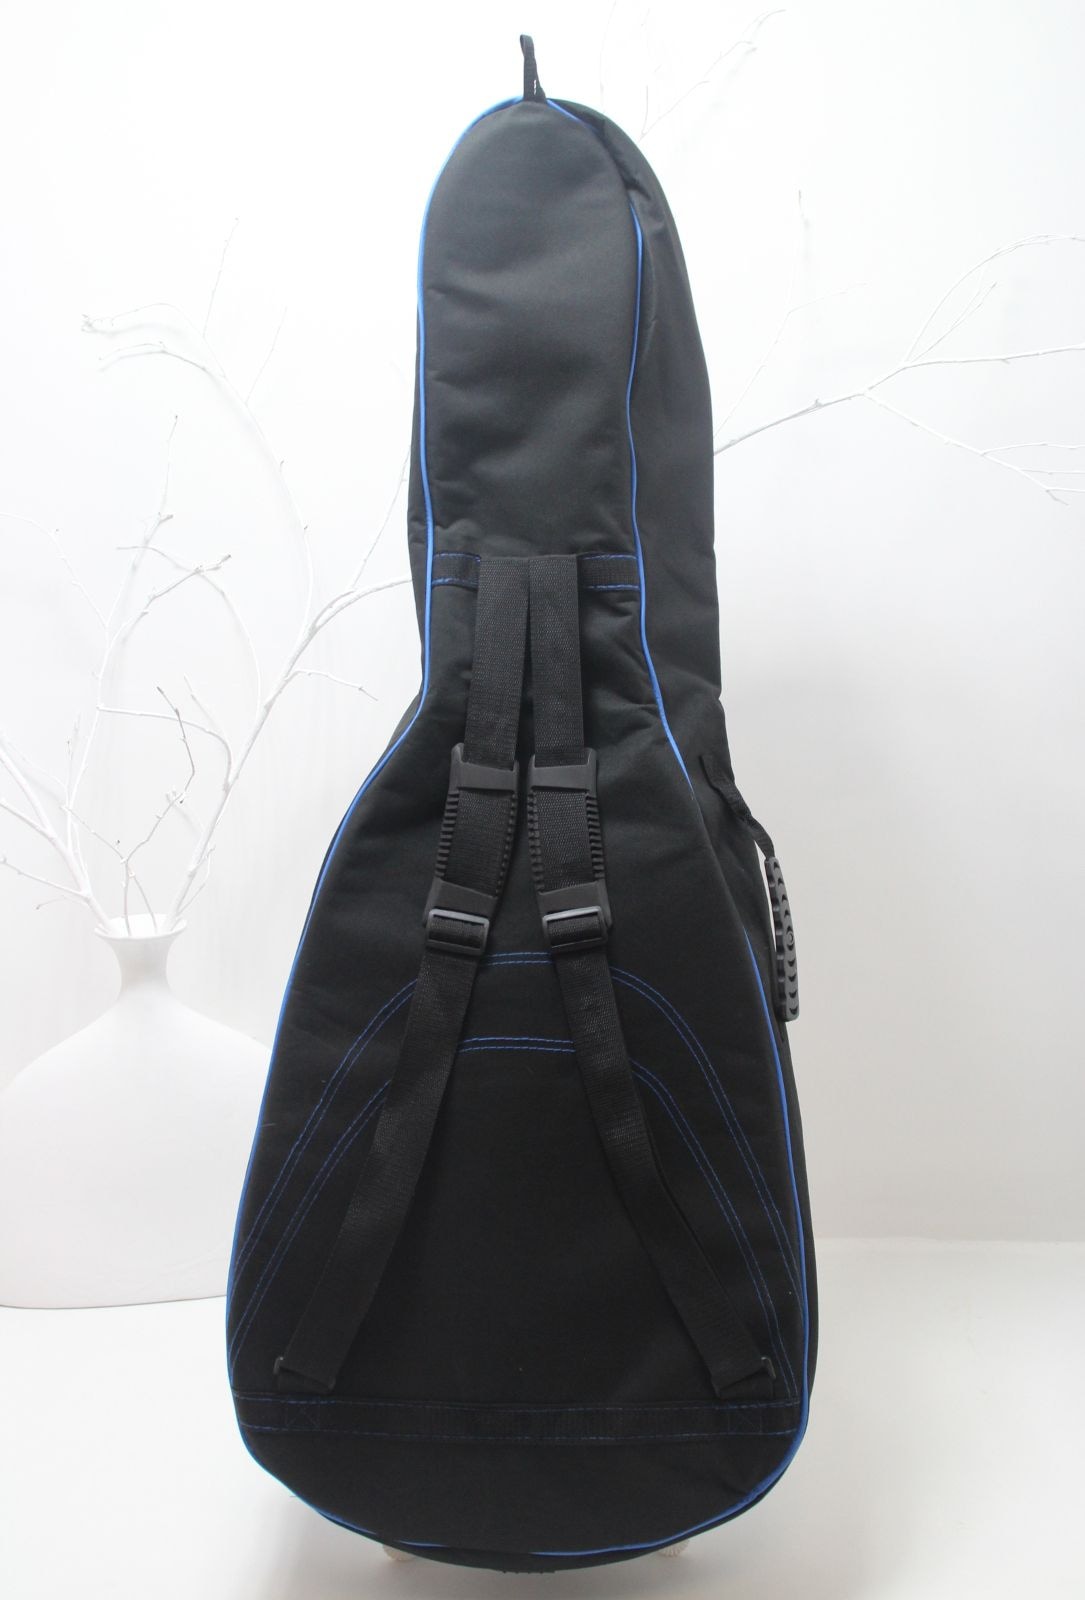 Чехол для акустической гитары BRAHNER GA-5 рюкзачного типа (много карманов)